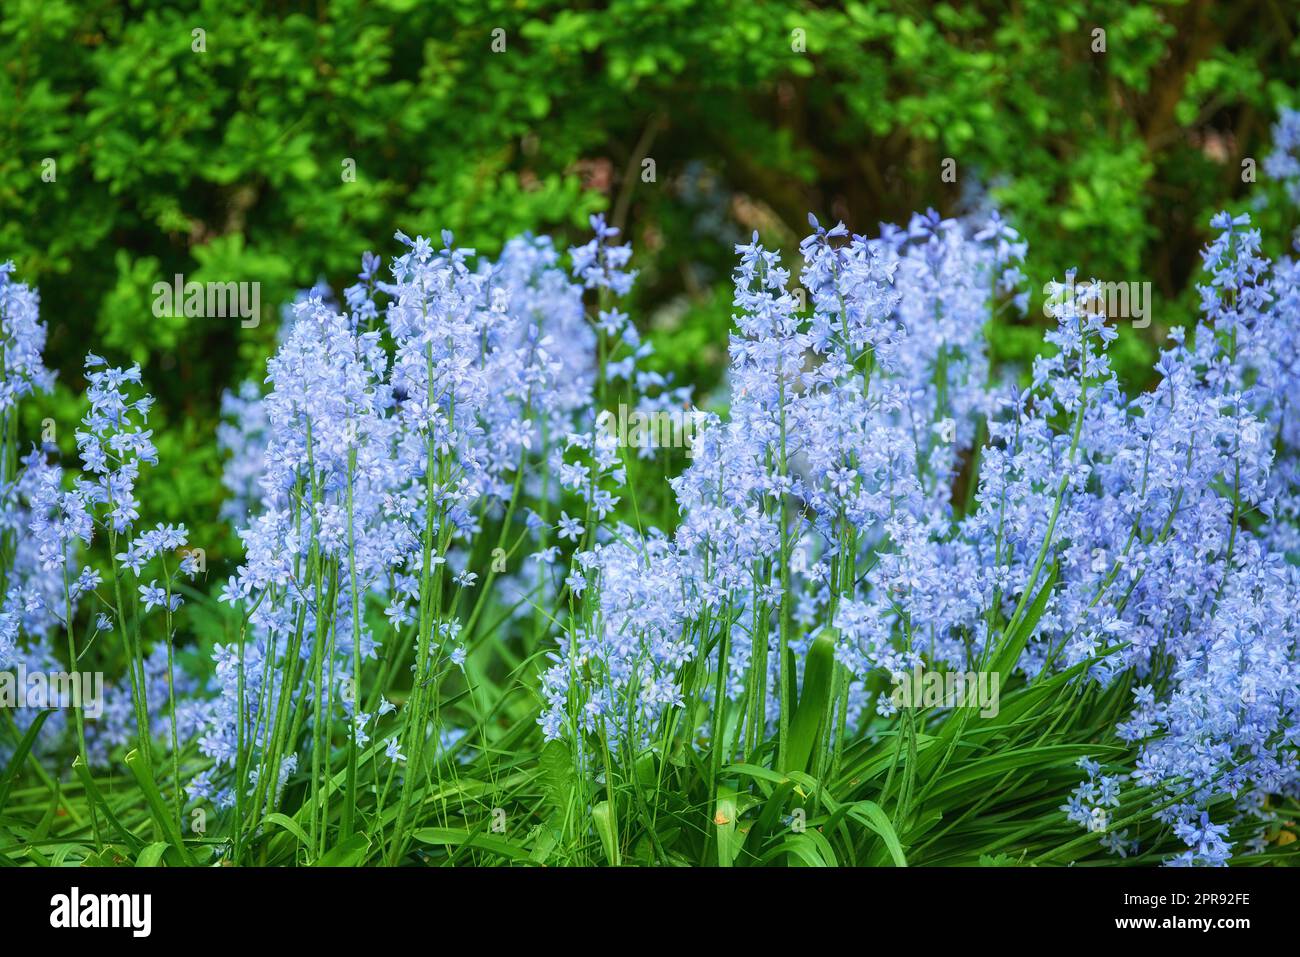 Blaue Flora blüht auf einer üppigen Wiese. Bluebell Scilla Siberica Blumen wachsen in einem ruhigen, friedlichen Privathaus oder botanischen Garten mit lebhaften grünen Pflanzen, die im Sommer um sie herum wachsen. Stockfoto